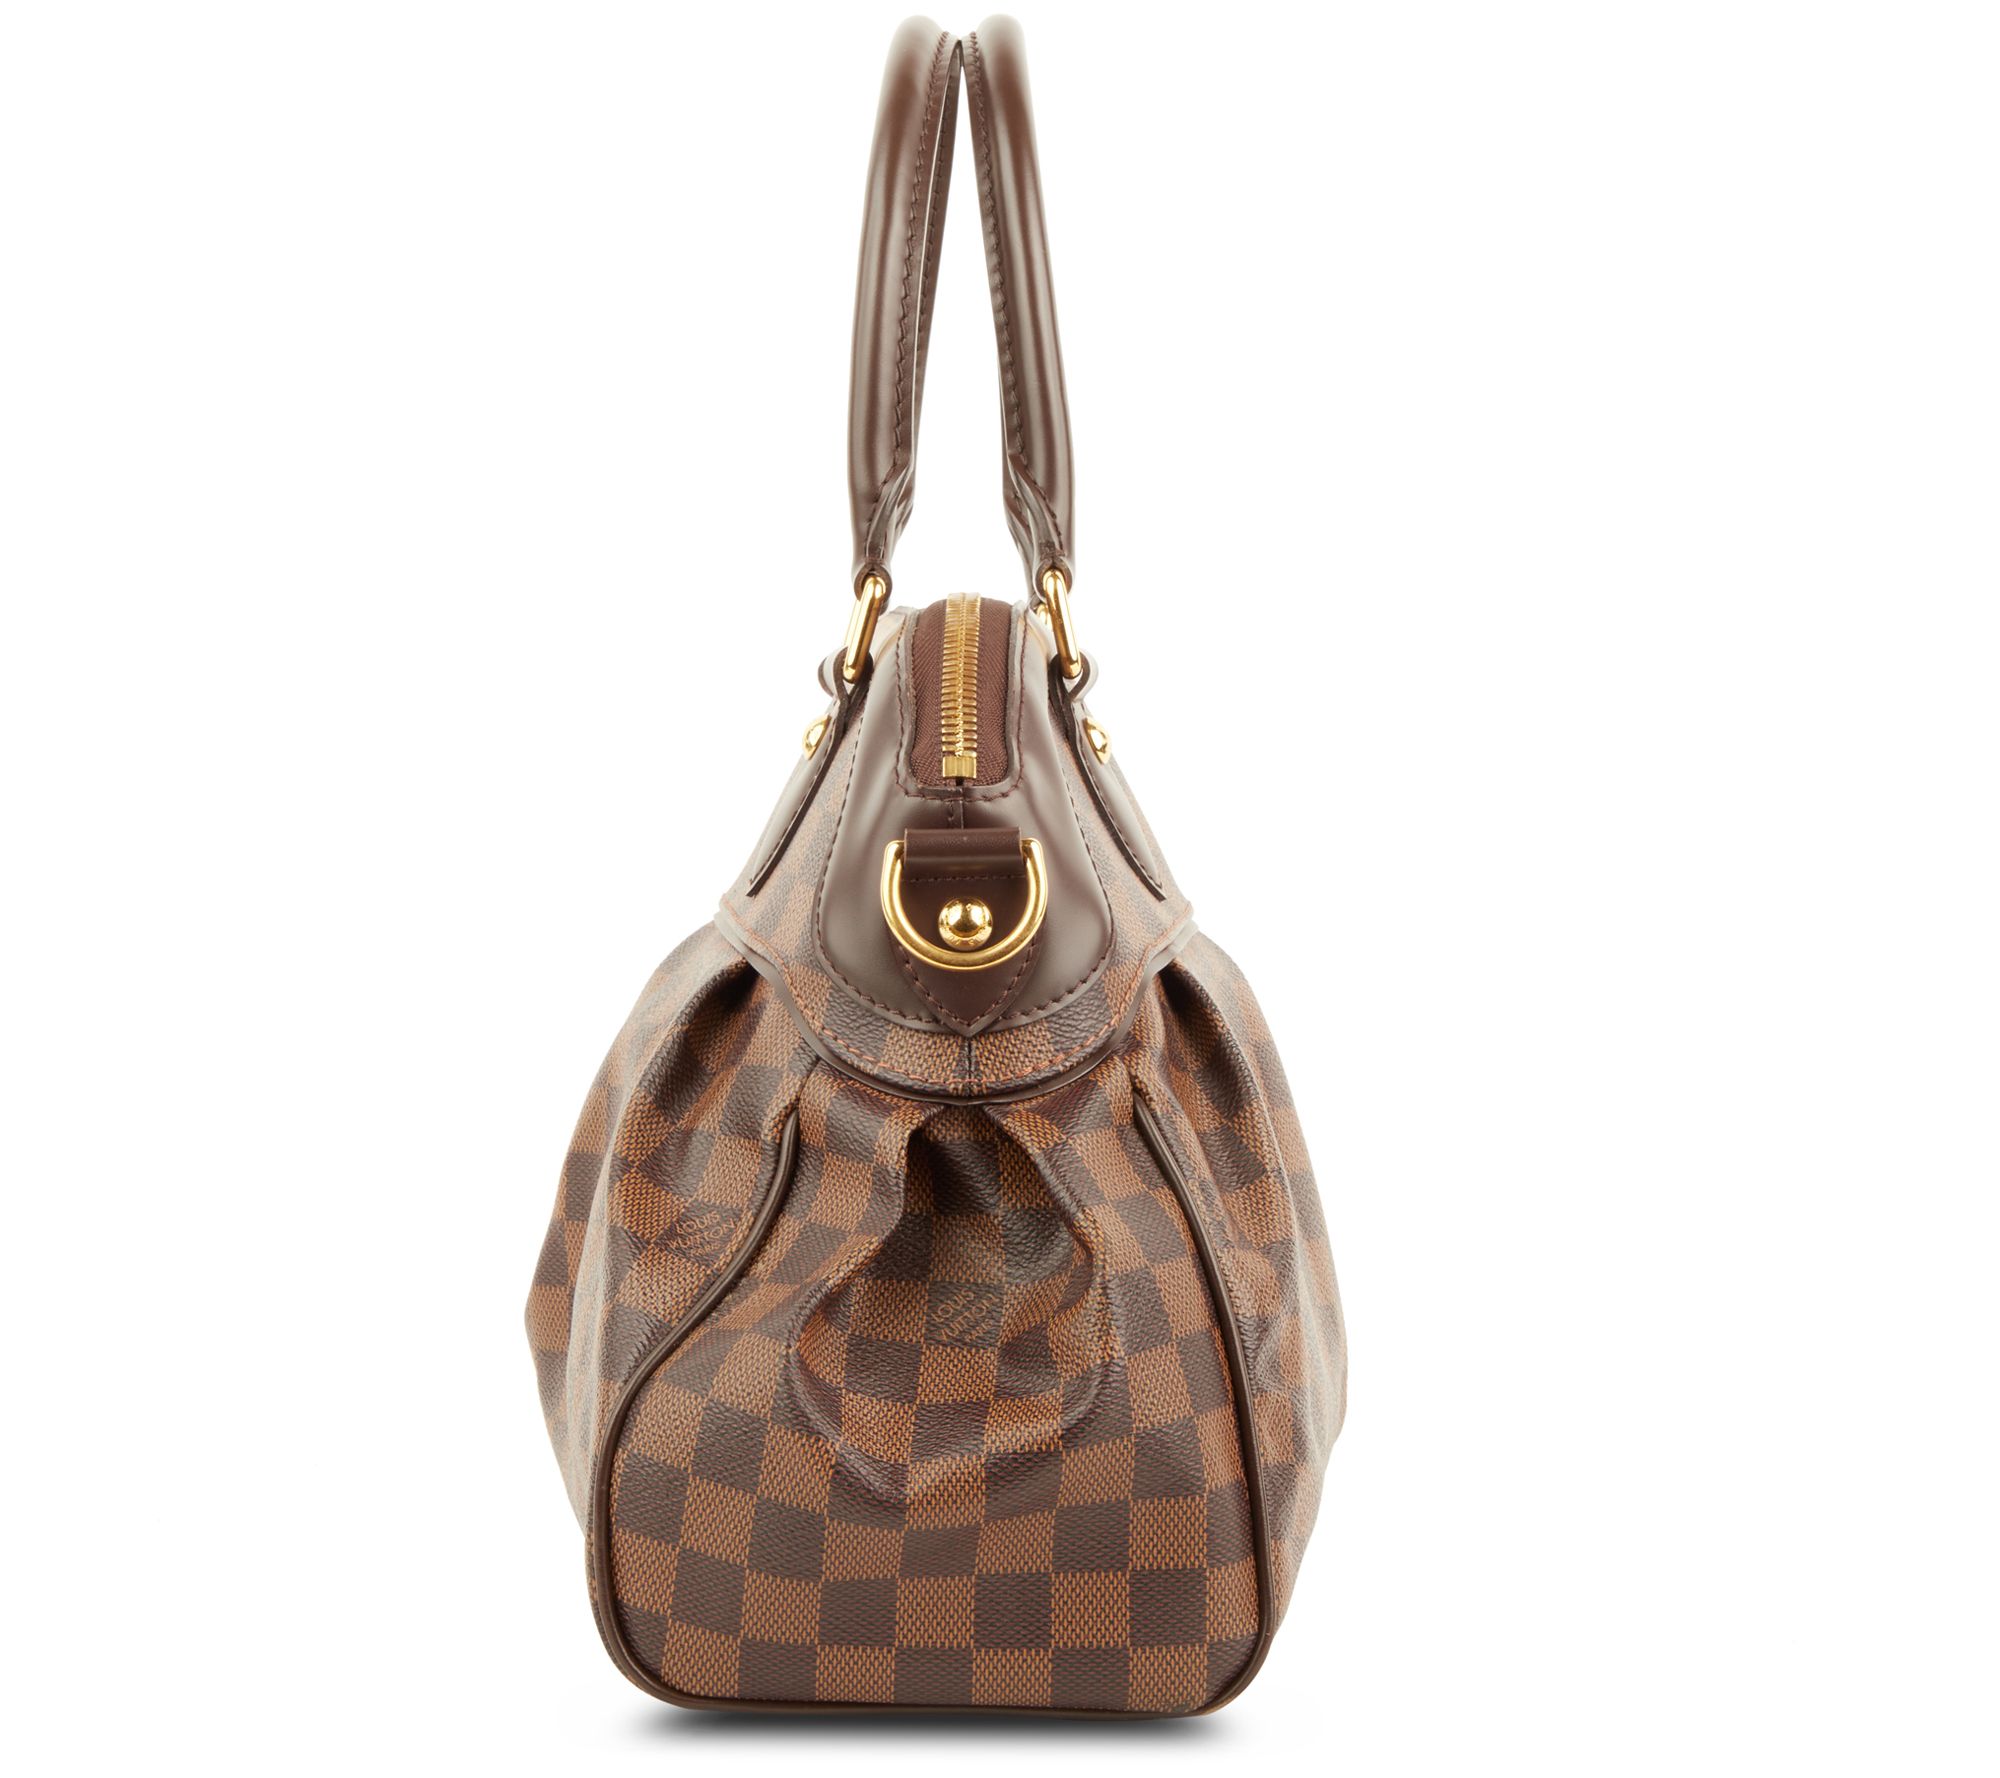 Louis Vuitton Trevi PM. The most beautiful bag Louis Vuitton has